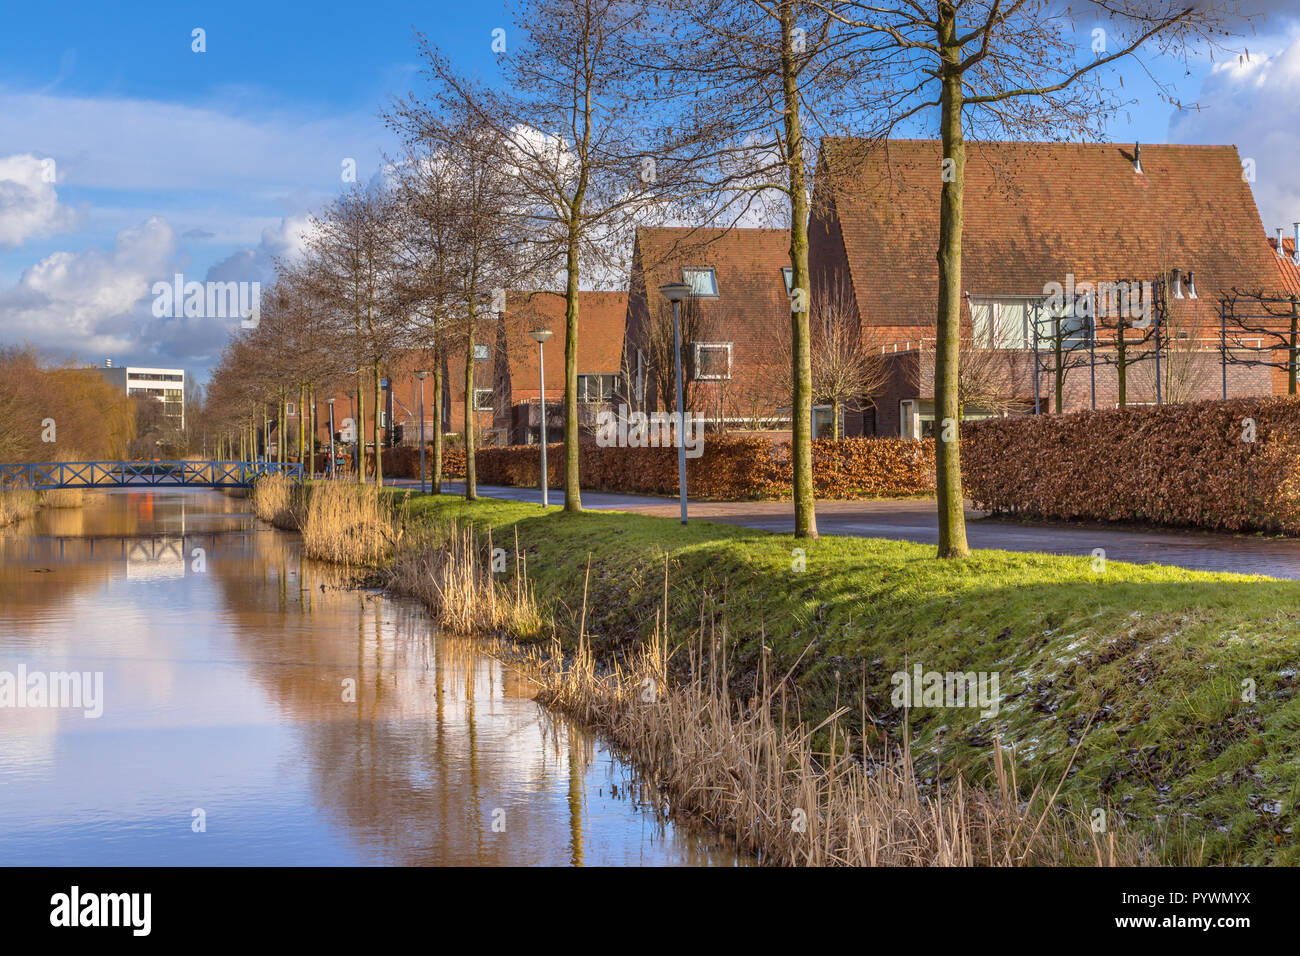 Maisons familiales le long d'une berge, dans une zone urbaine écologique en hiver, Groningen, Pays-Bas Banque D'Images